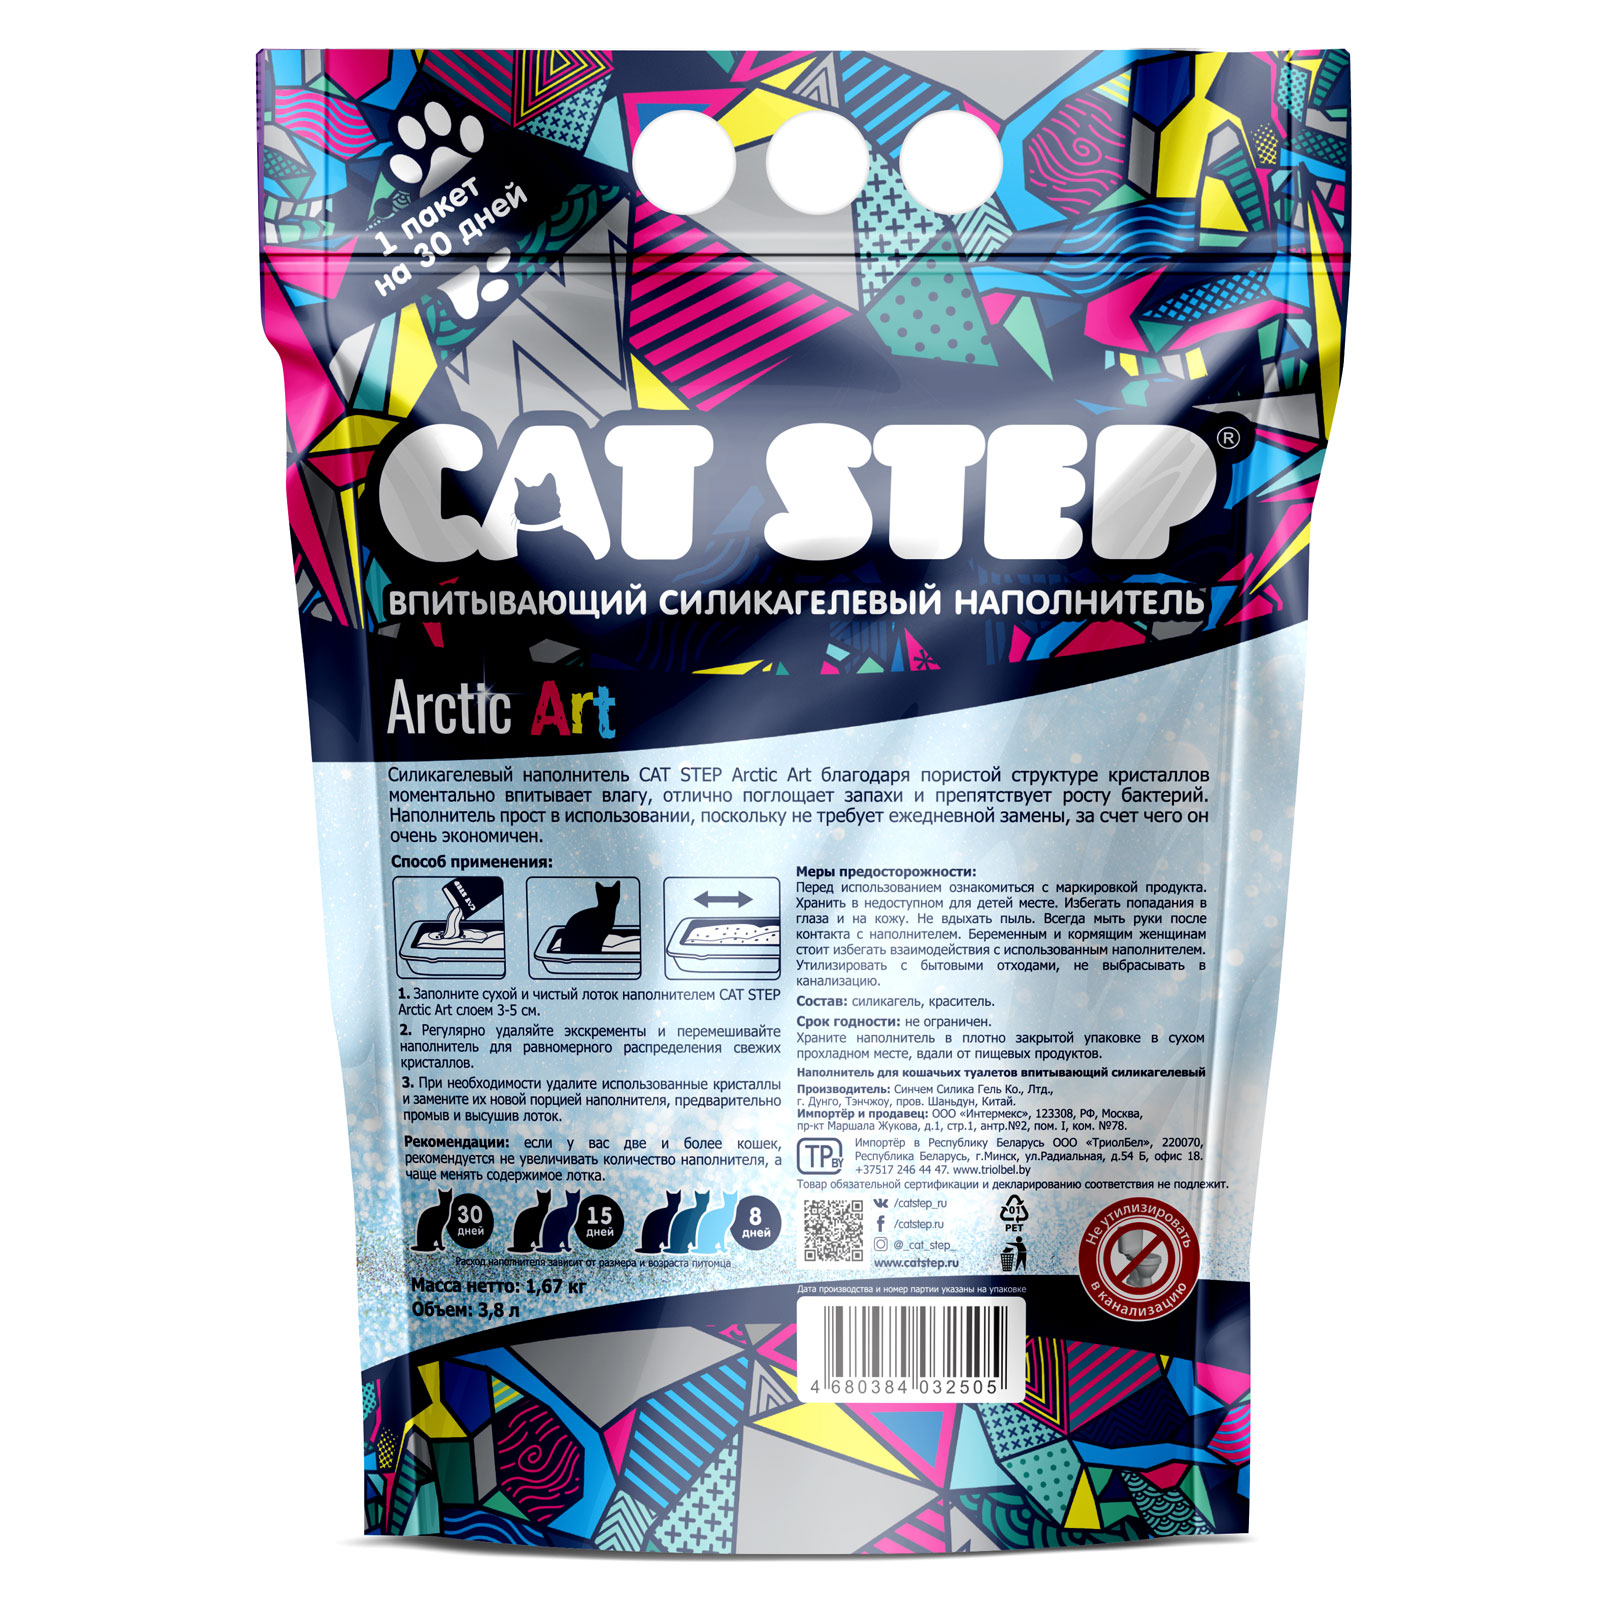 Наполнитель для кошек Cat Step Arctic Art впитывающий силикагелевый 3.8л - фото 3